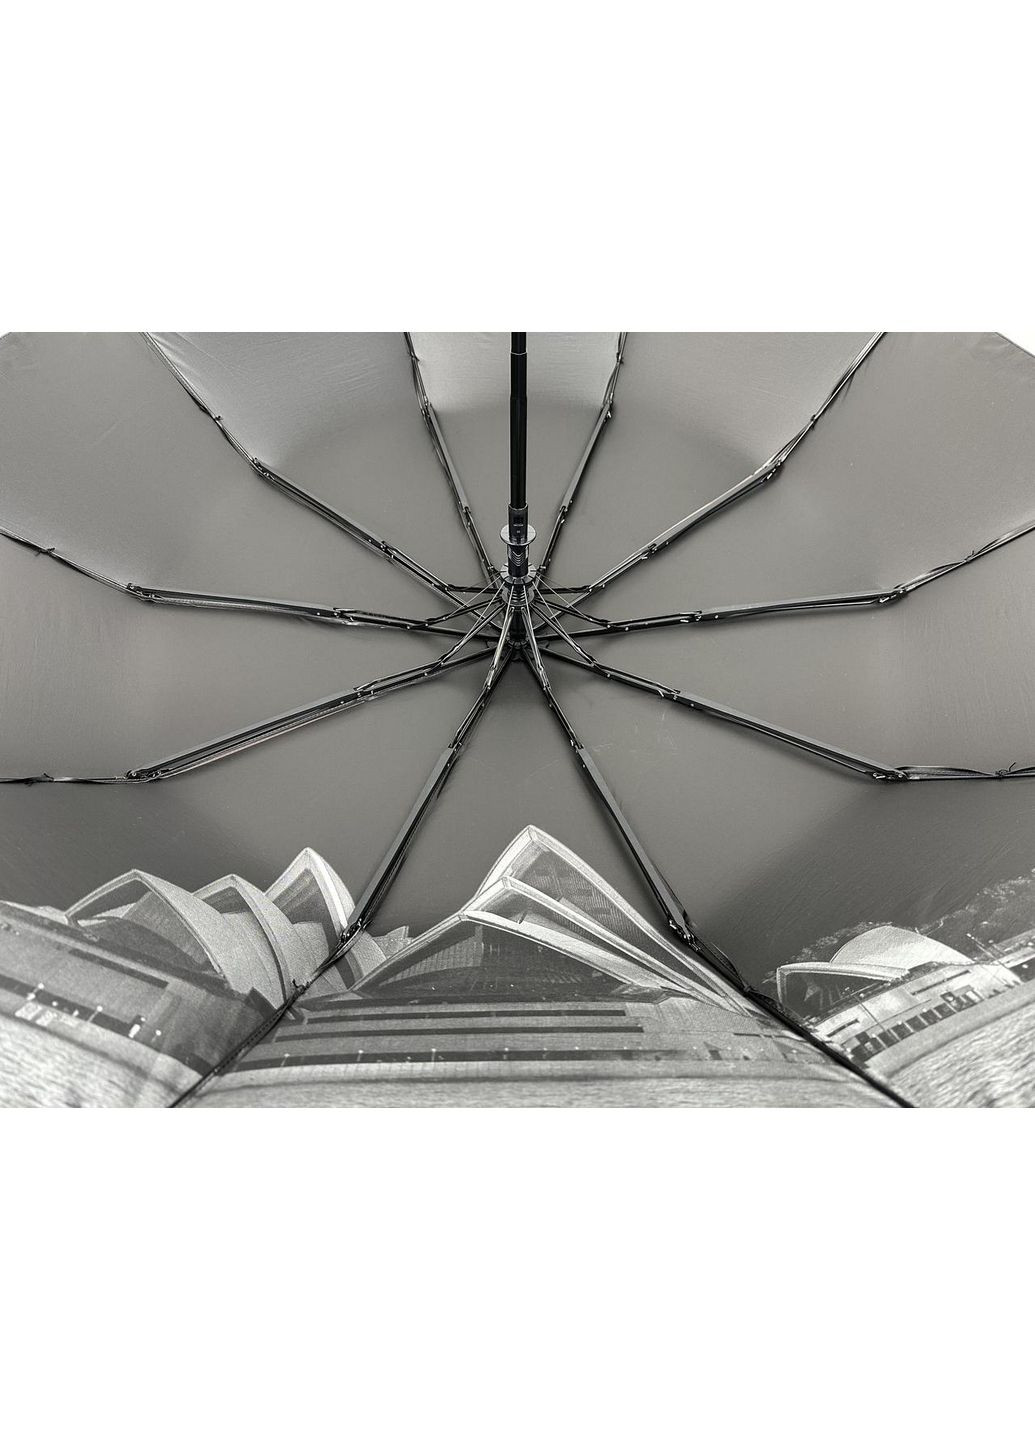 Зонт женский полуавтоматический Bellissima (288132634)